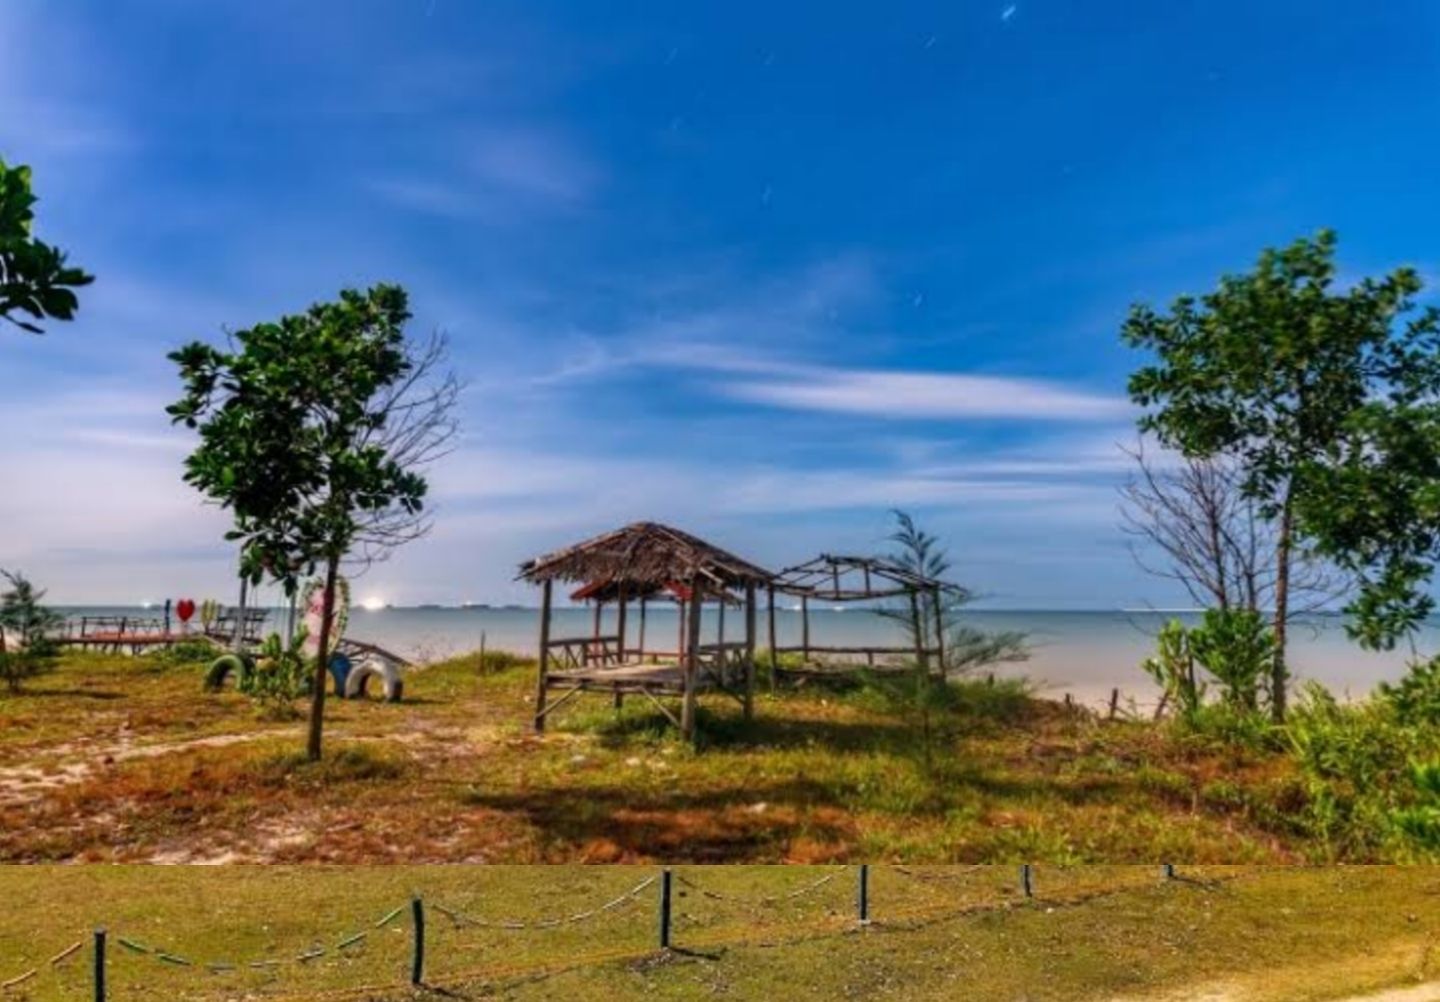 Pantai Muara Kintap, Tanah Laut, Kalimantan Selatan